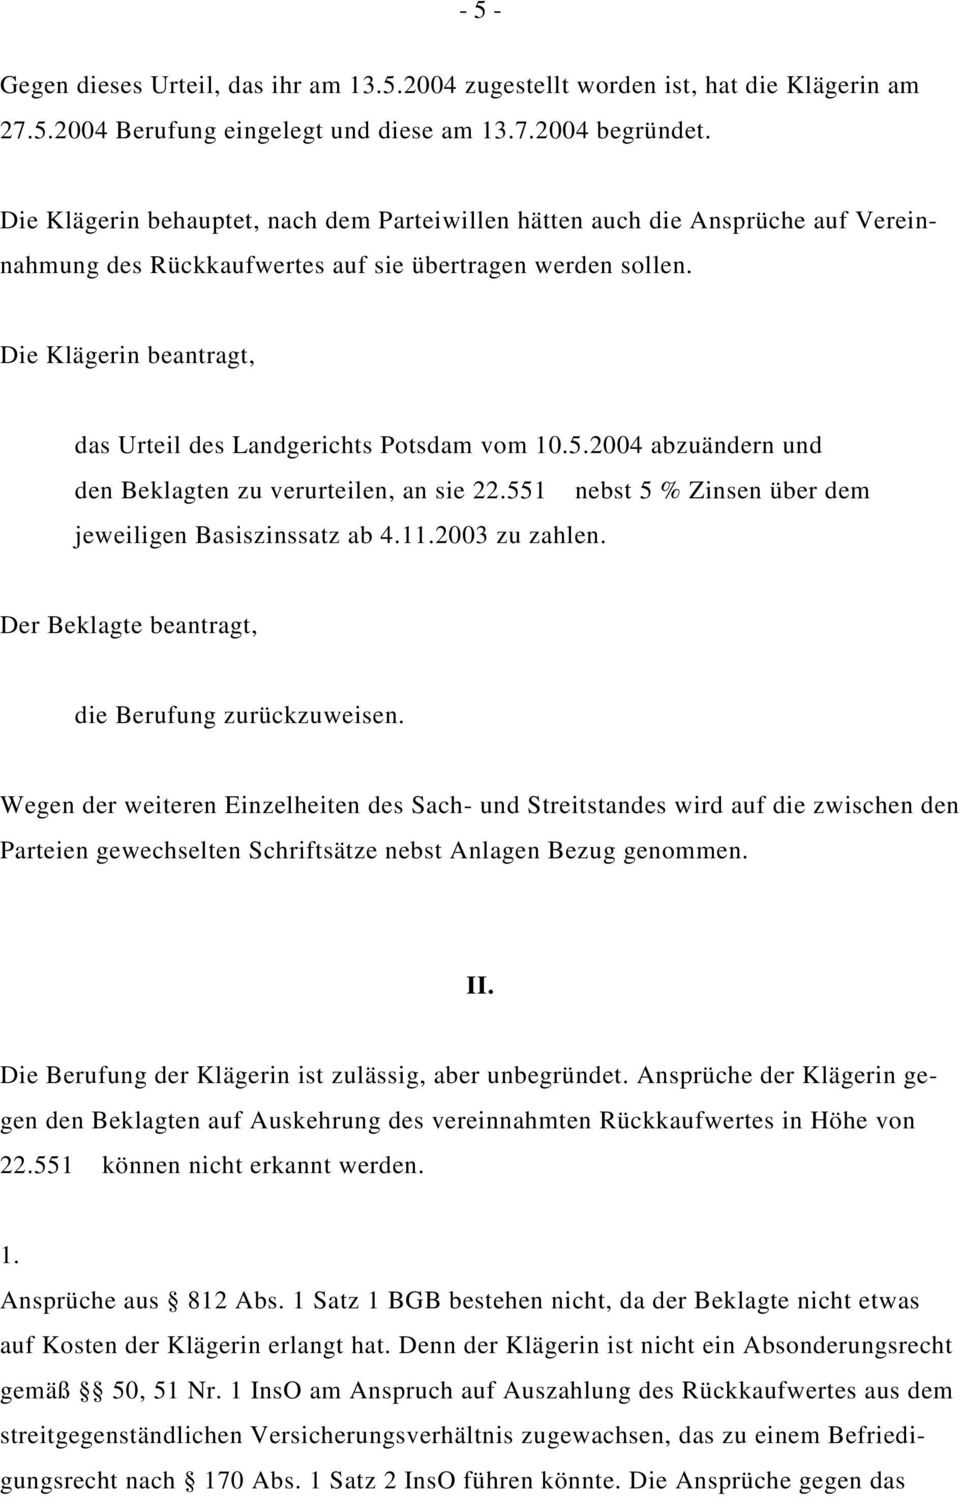 Die Klägerin beantragt, das Urteil des Landgerichts Potsdam vom 10.5.2004 abzuändern und den Beklagten zu verurteilen, an sie 22.551 nebst 5 % Zinsen über dem jeweiligen Basiszinssatz ab 4.11.